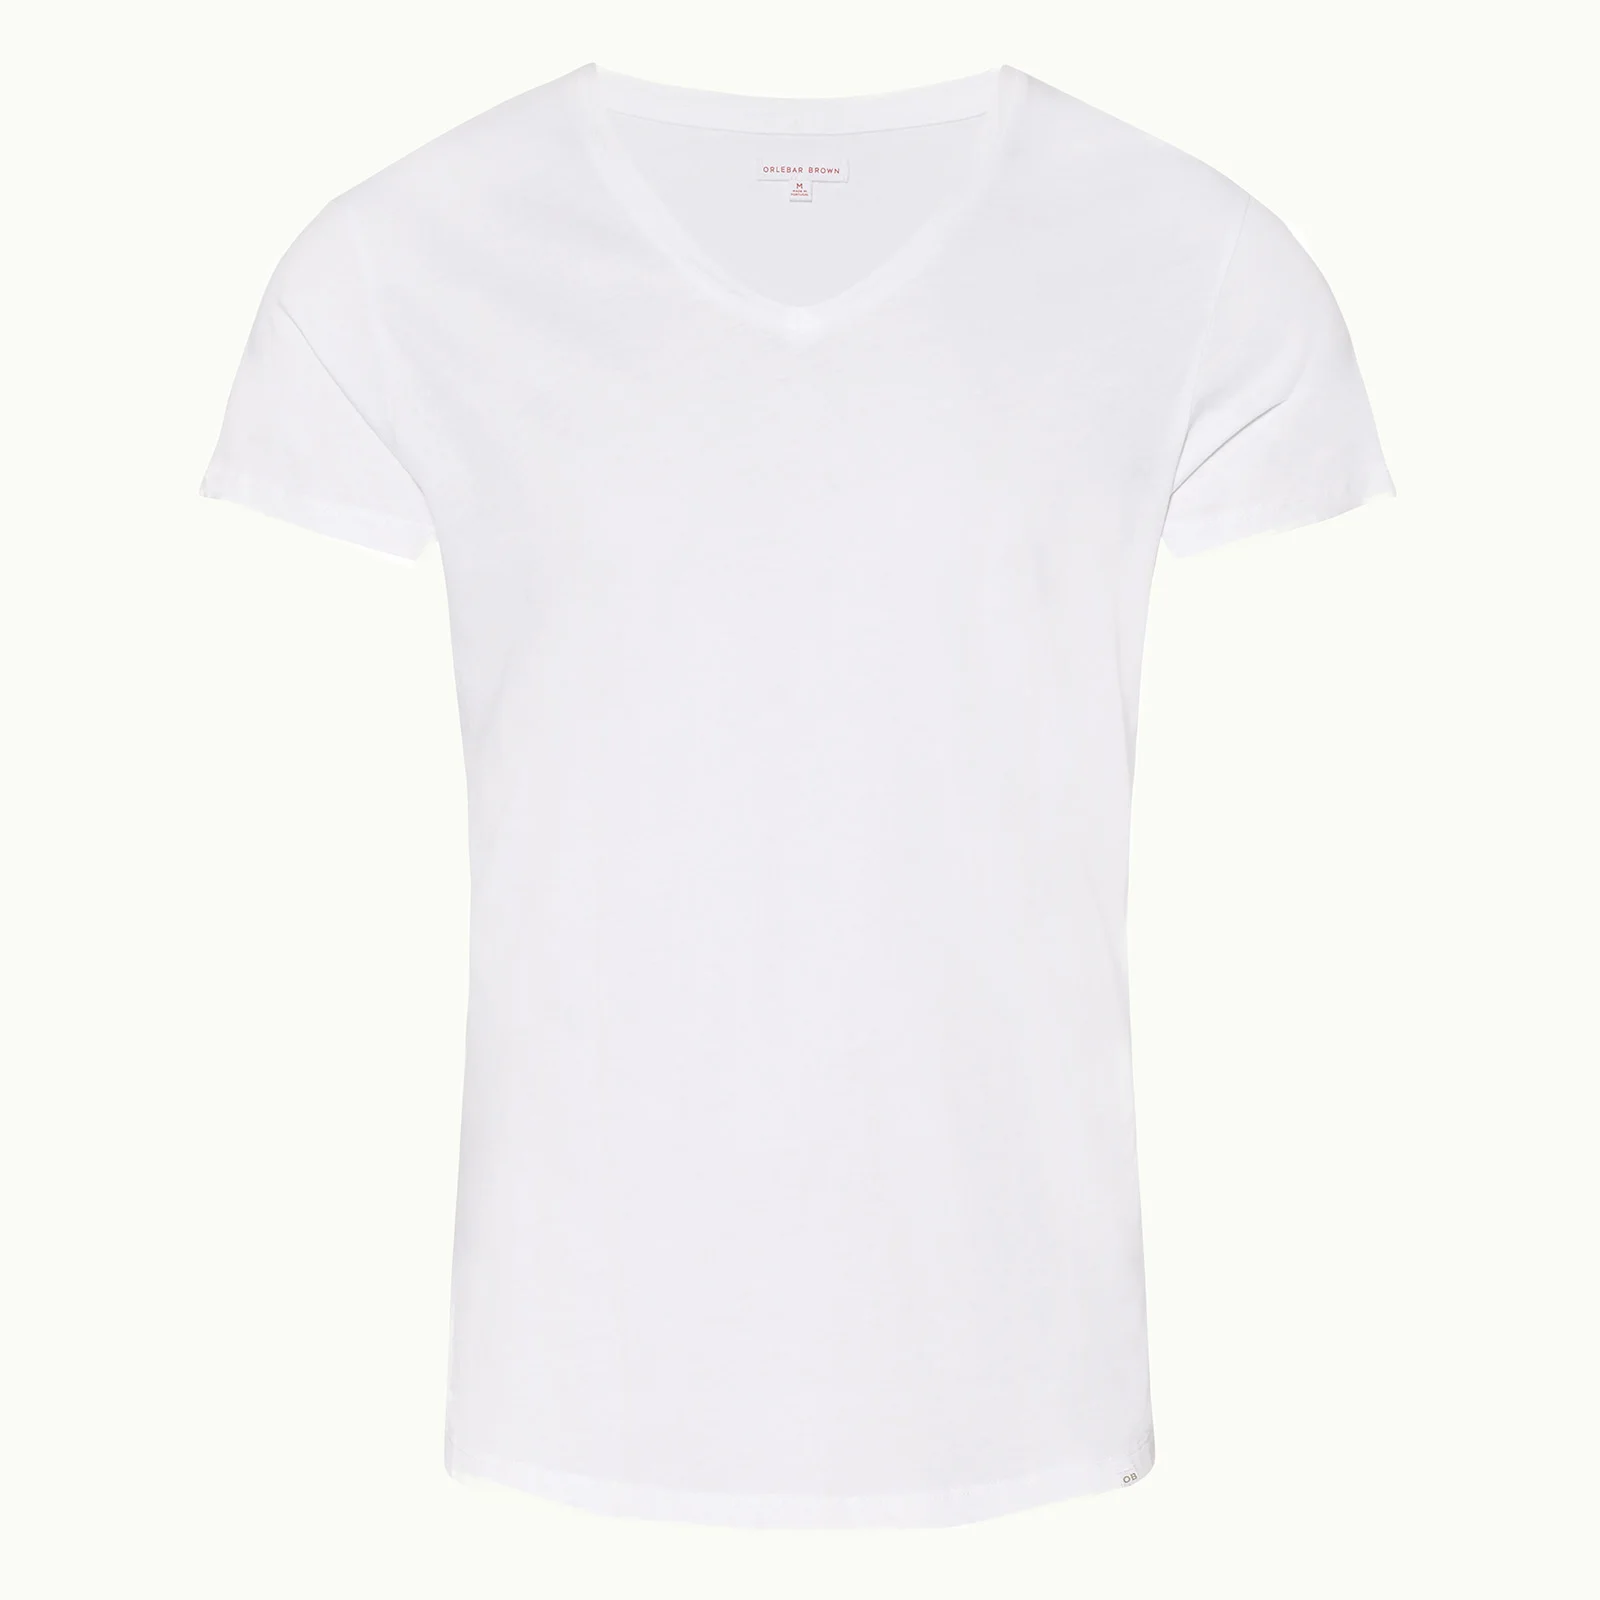 Orlebar Brown Men's Obv V Neck T-Shirt - White Image 1